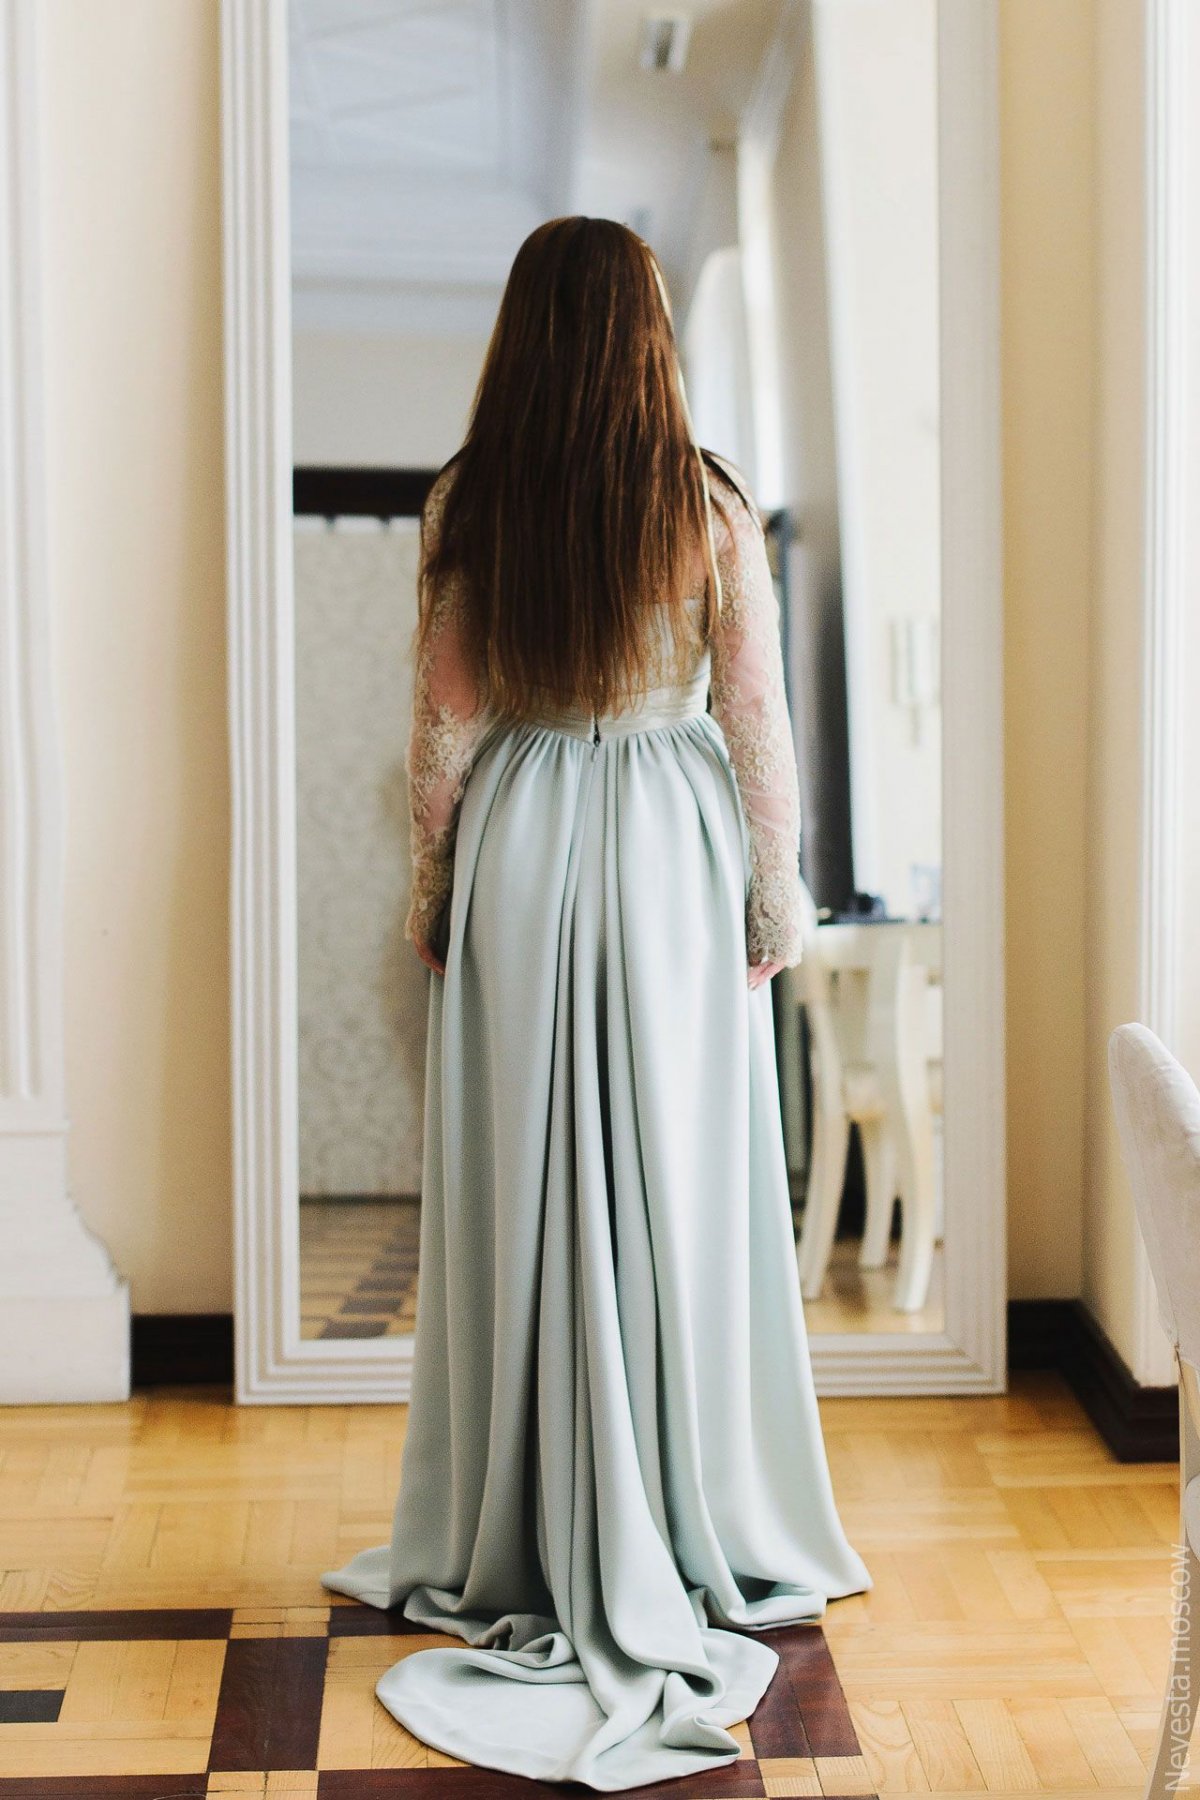 Анастасия Денисова примеряет свадебное платье фото 4